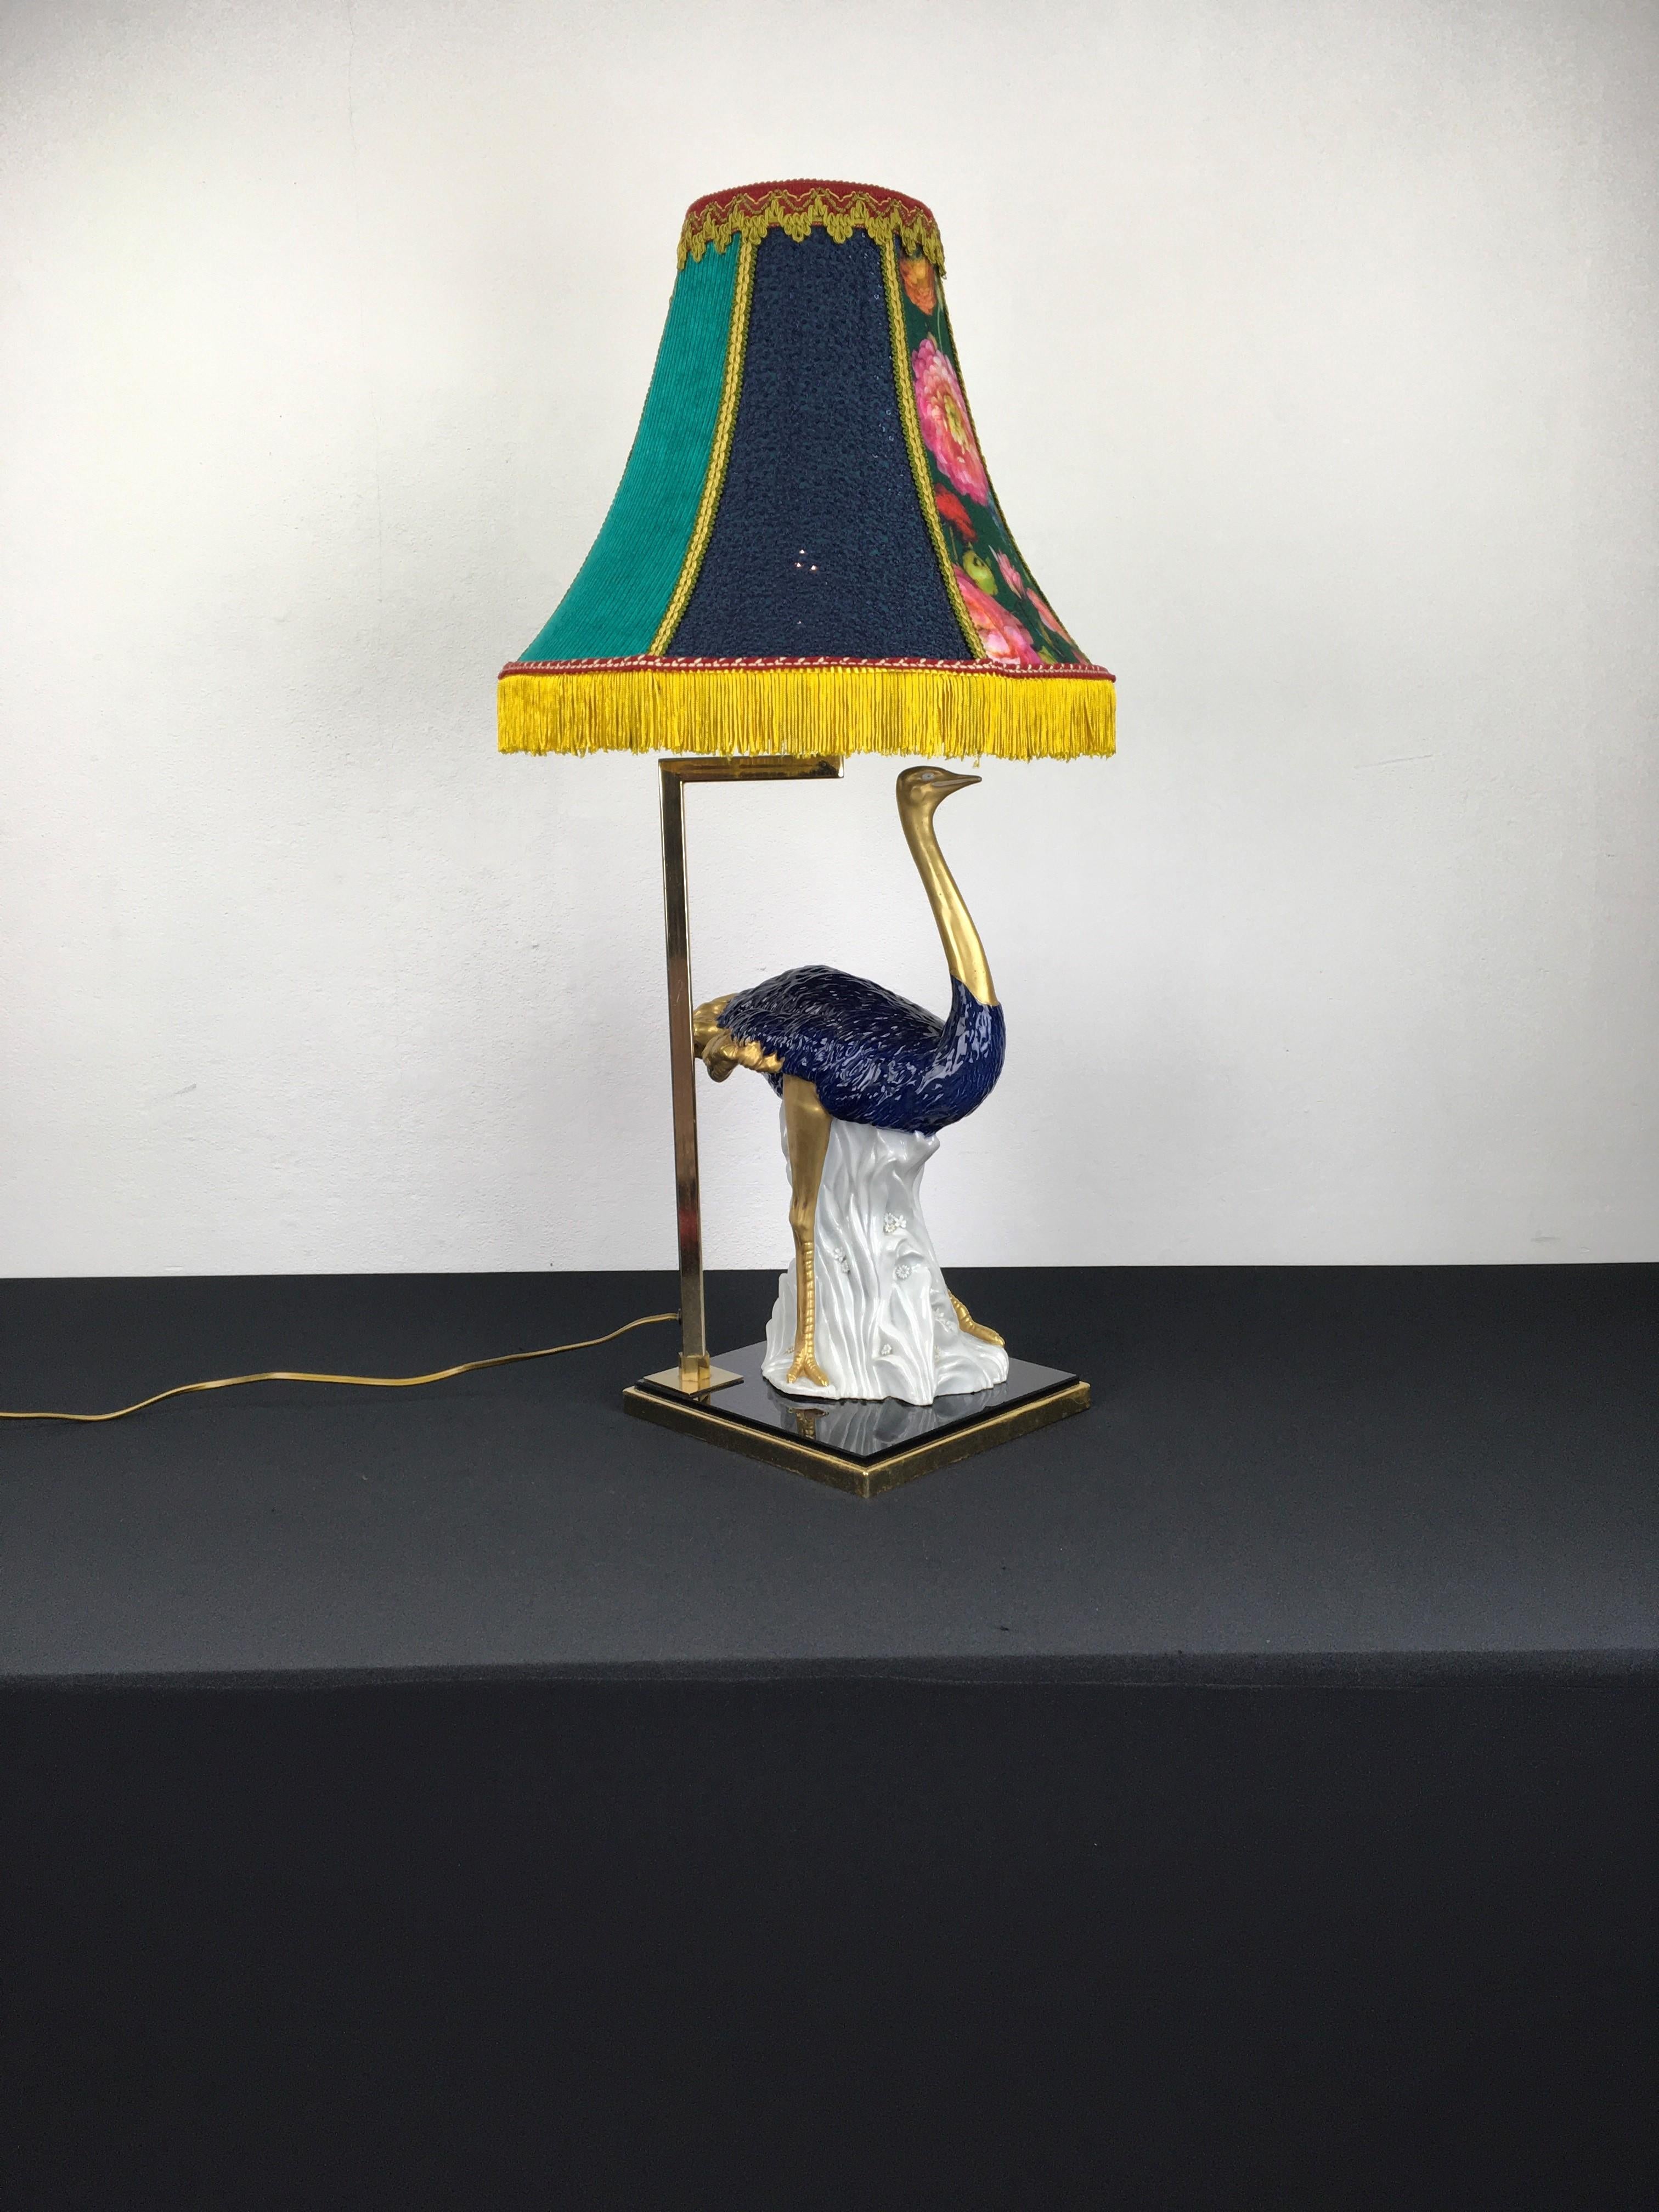 Blaue Porzellan-Tischlampe in Form eines Straußenvogels. 
Diese außergewöhnliche und stilvolle Vintage-Tischlampe hat einen kobaltblauen mit Gold bemalten Porzellanstrauß, der 
montiert auf einem kobaltfarbenen Glas mit Facettenschliff. Der Vogel